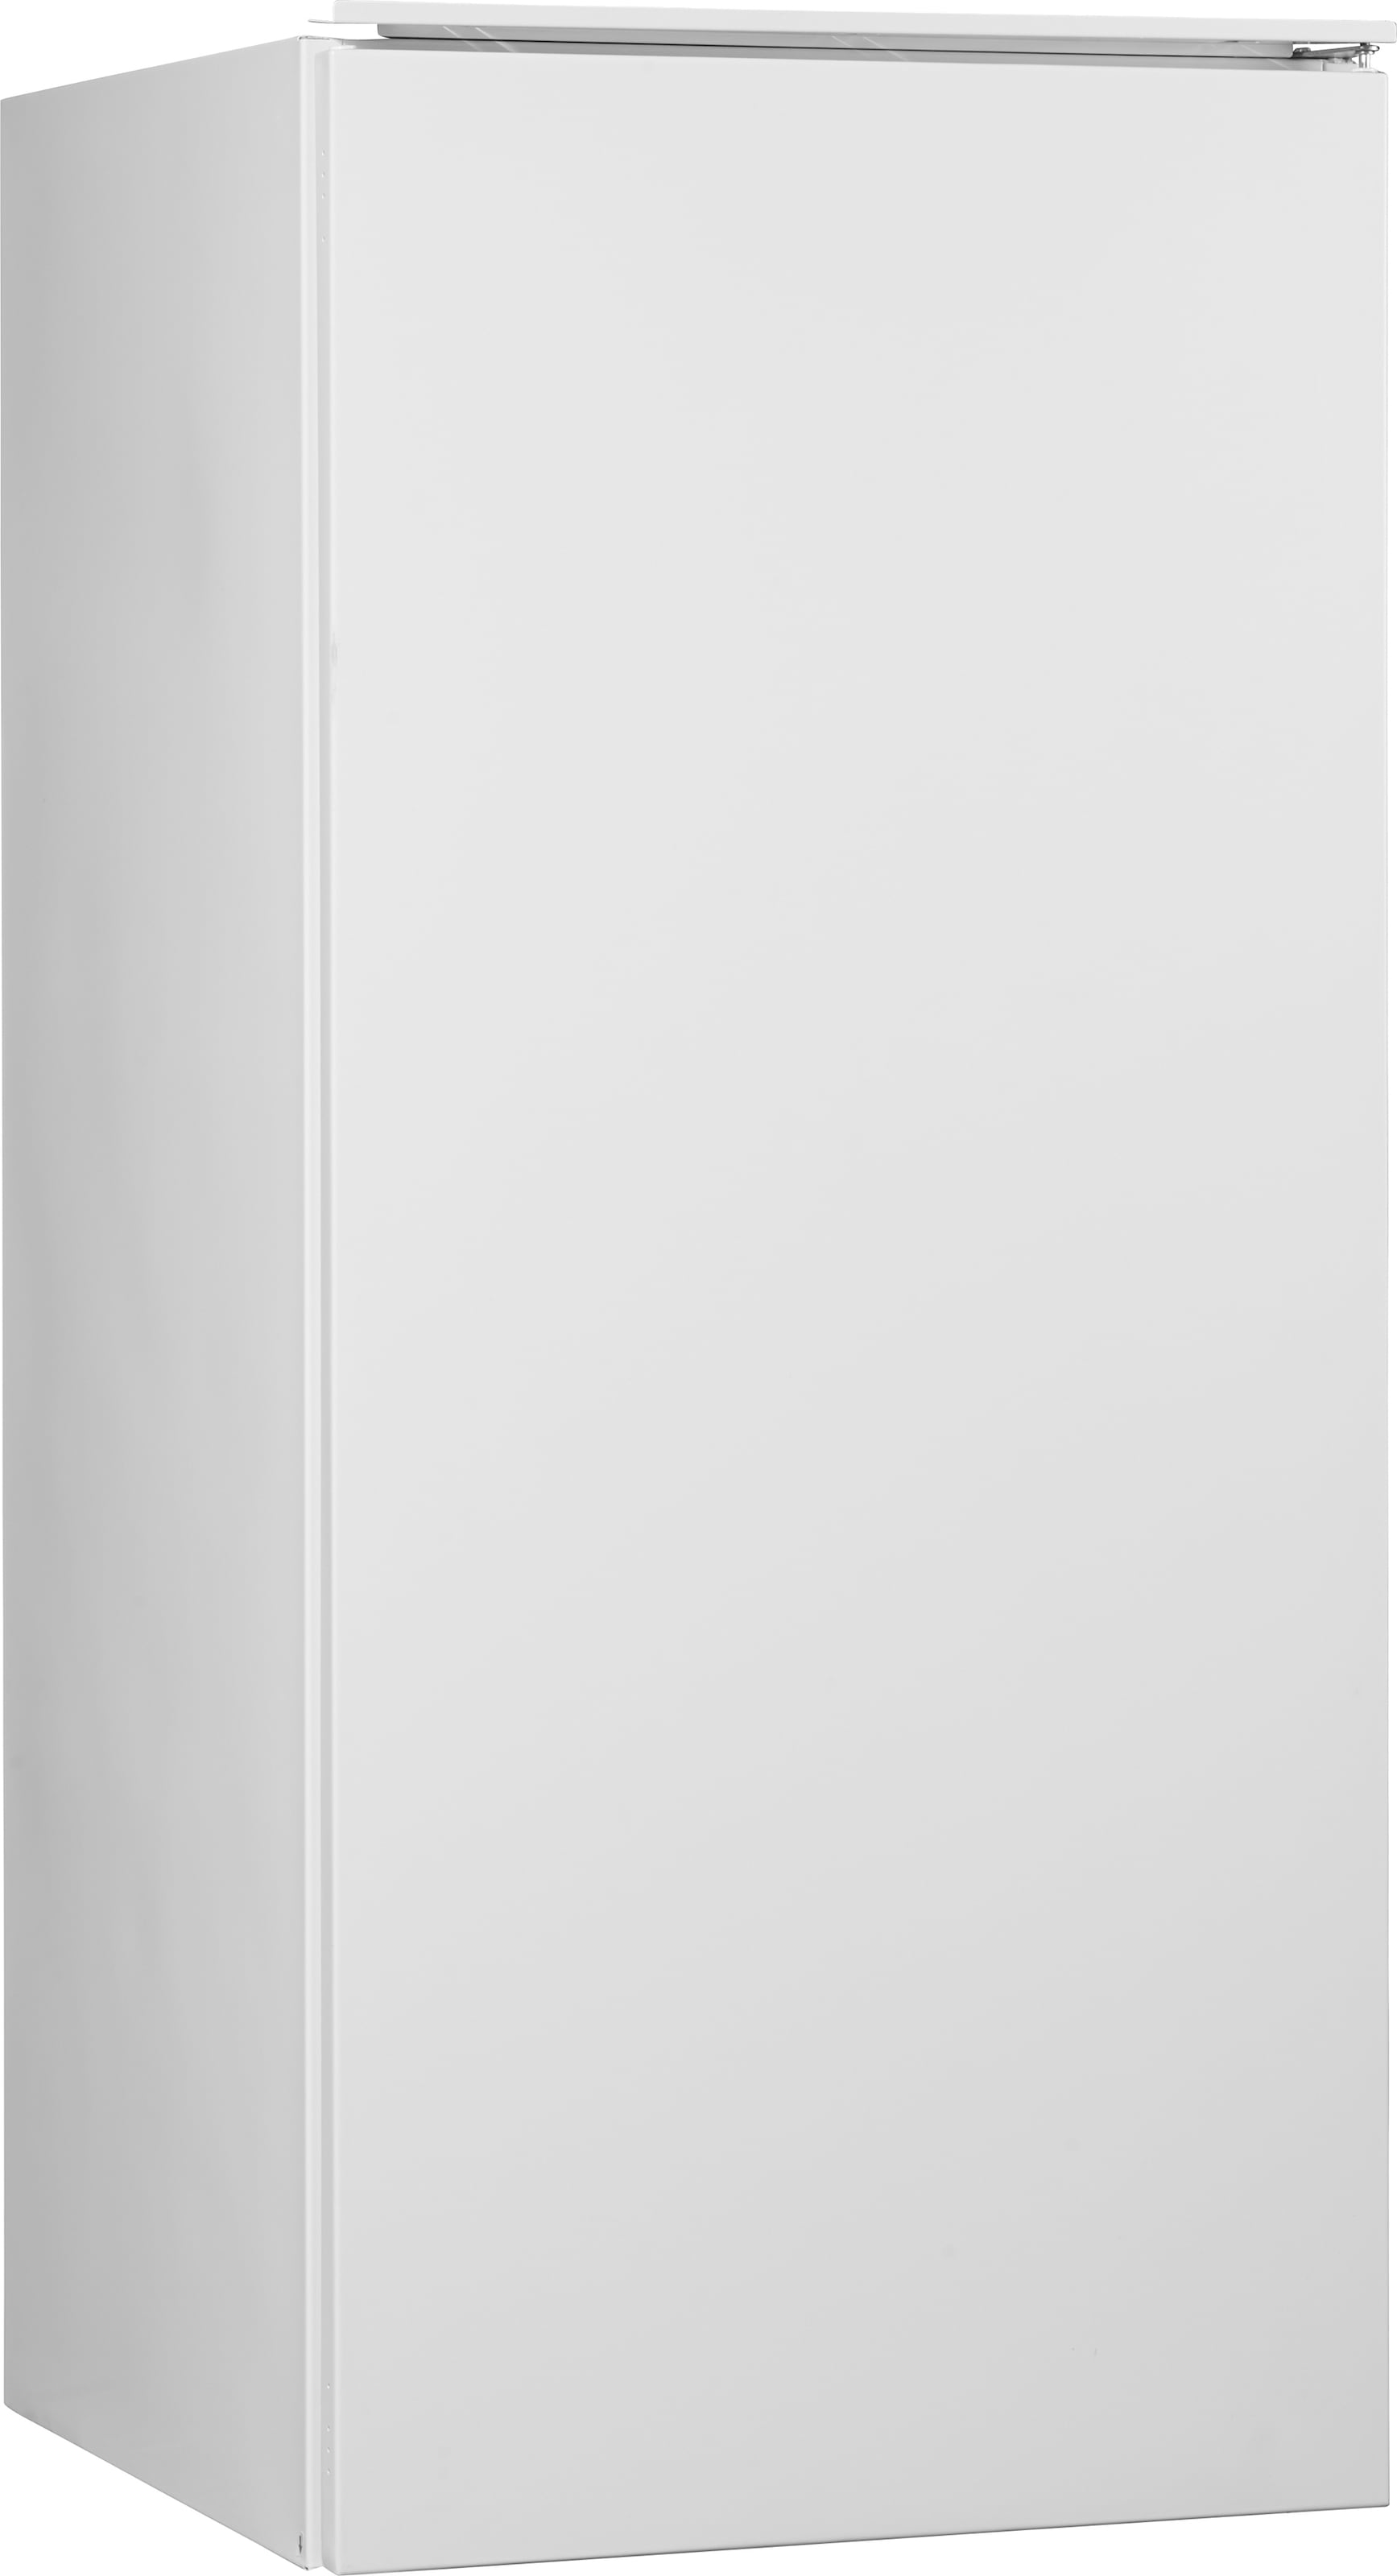 Hanseatic Einbaukühlschrank, HEKS12254GF, 123 cm hoch, 54 cm breit | BAUR